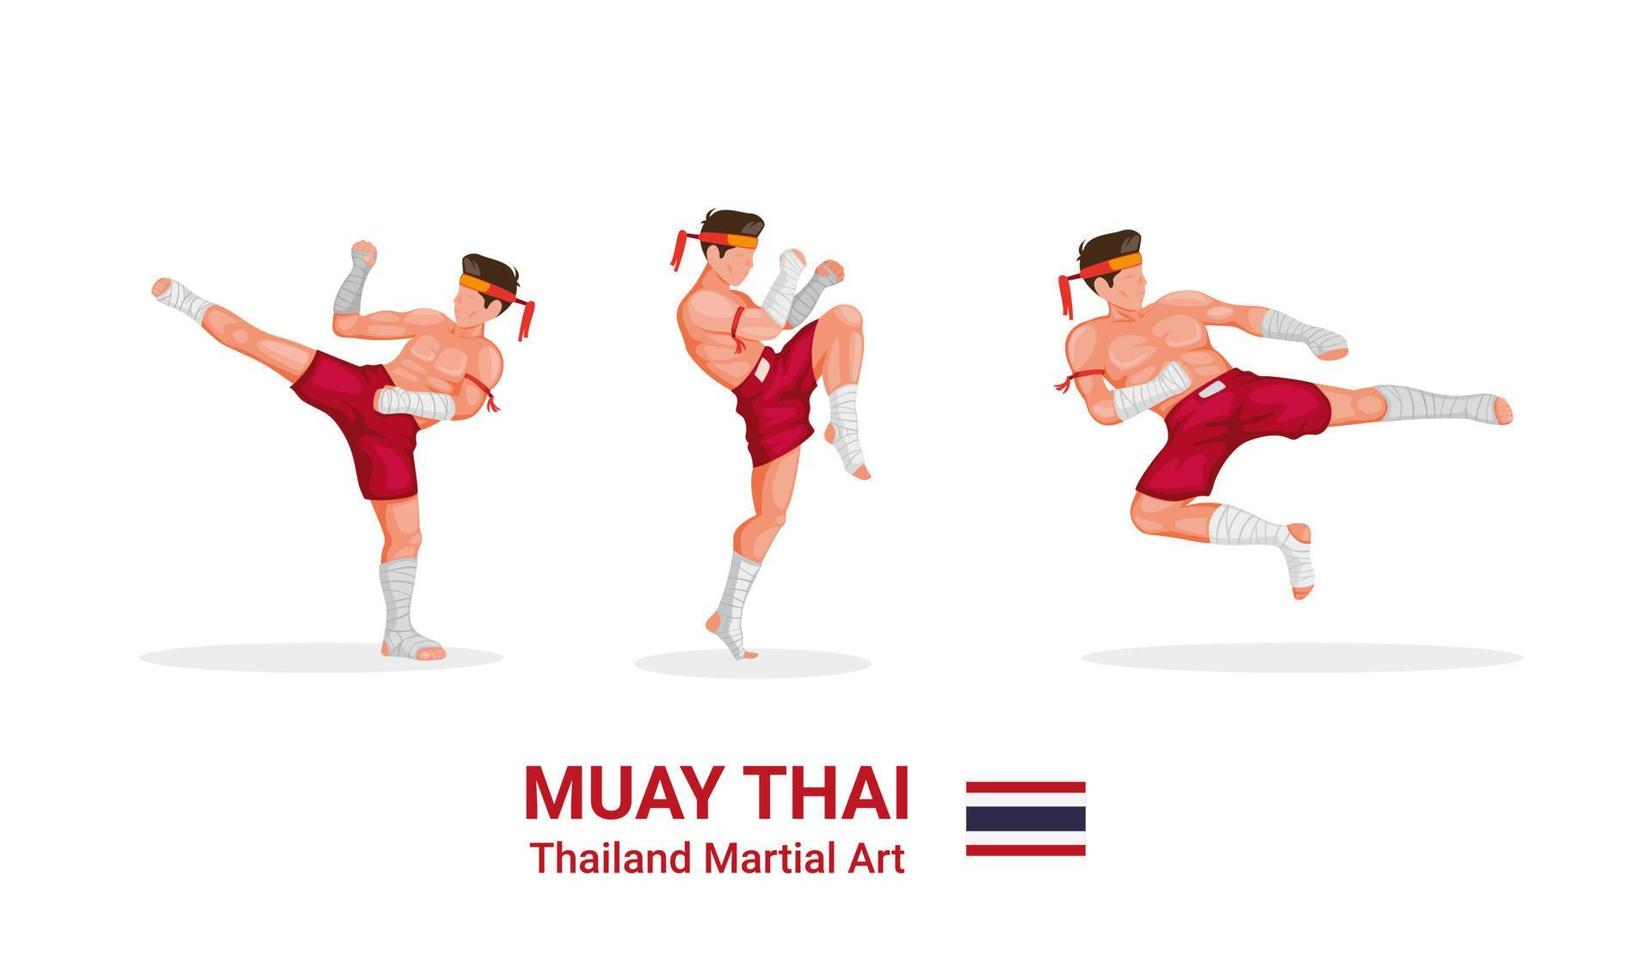 muay thai - thaiboxning traditionell kampsport från thailand figursamling ikonuppsättning i tecknad platt illustration vektor isolerad i vit bakgrund